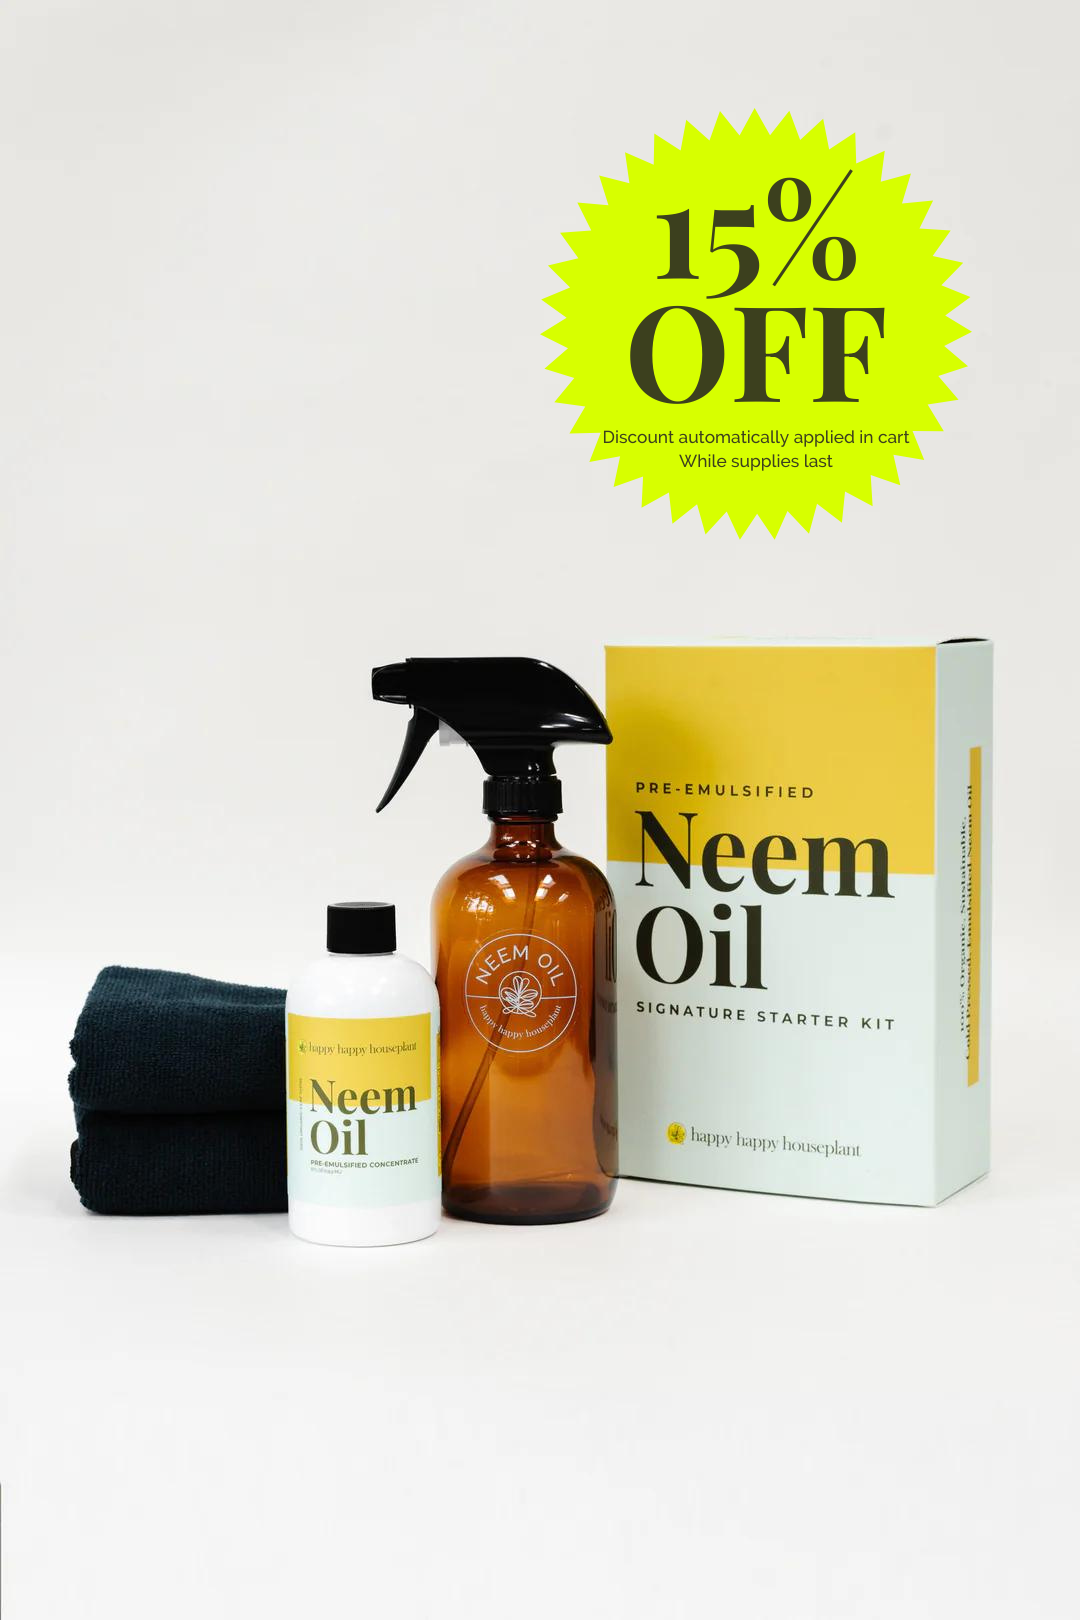 Neem Oil Pre-Emulsified Signature Starter Kit